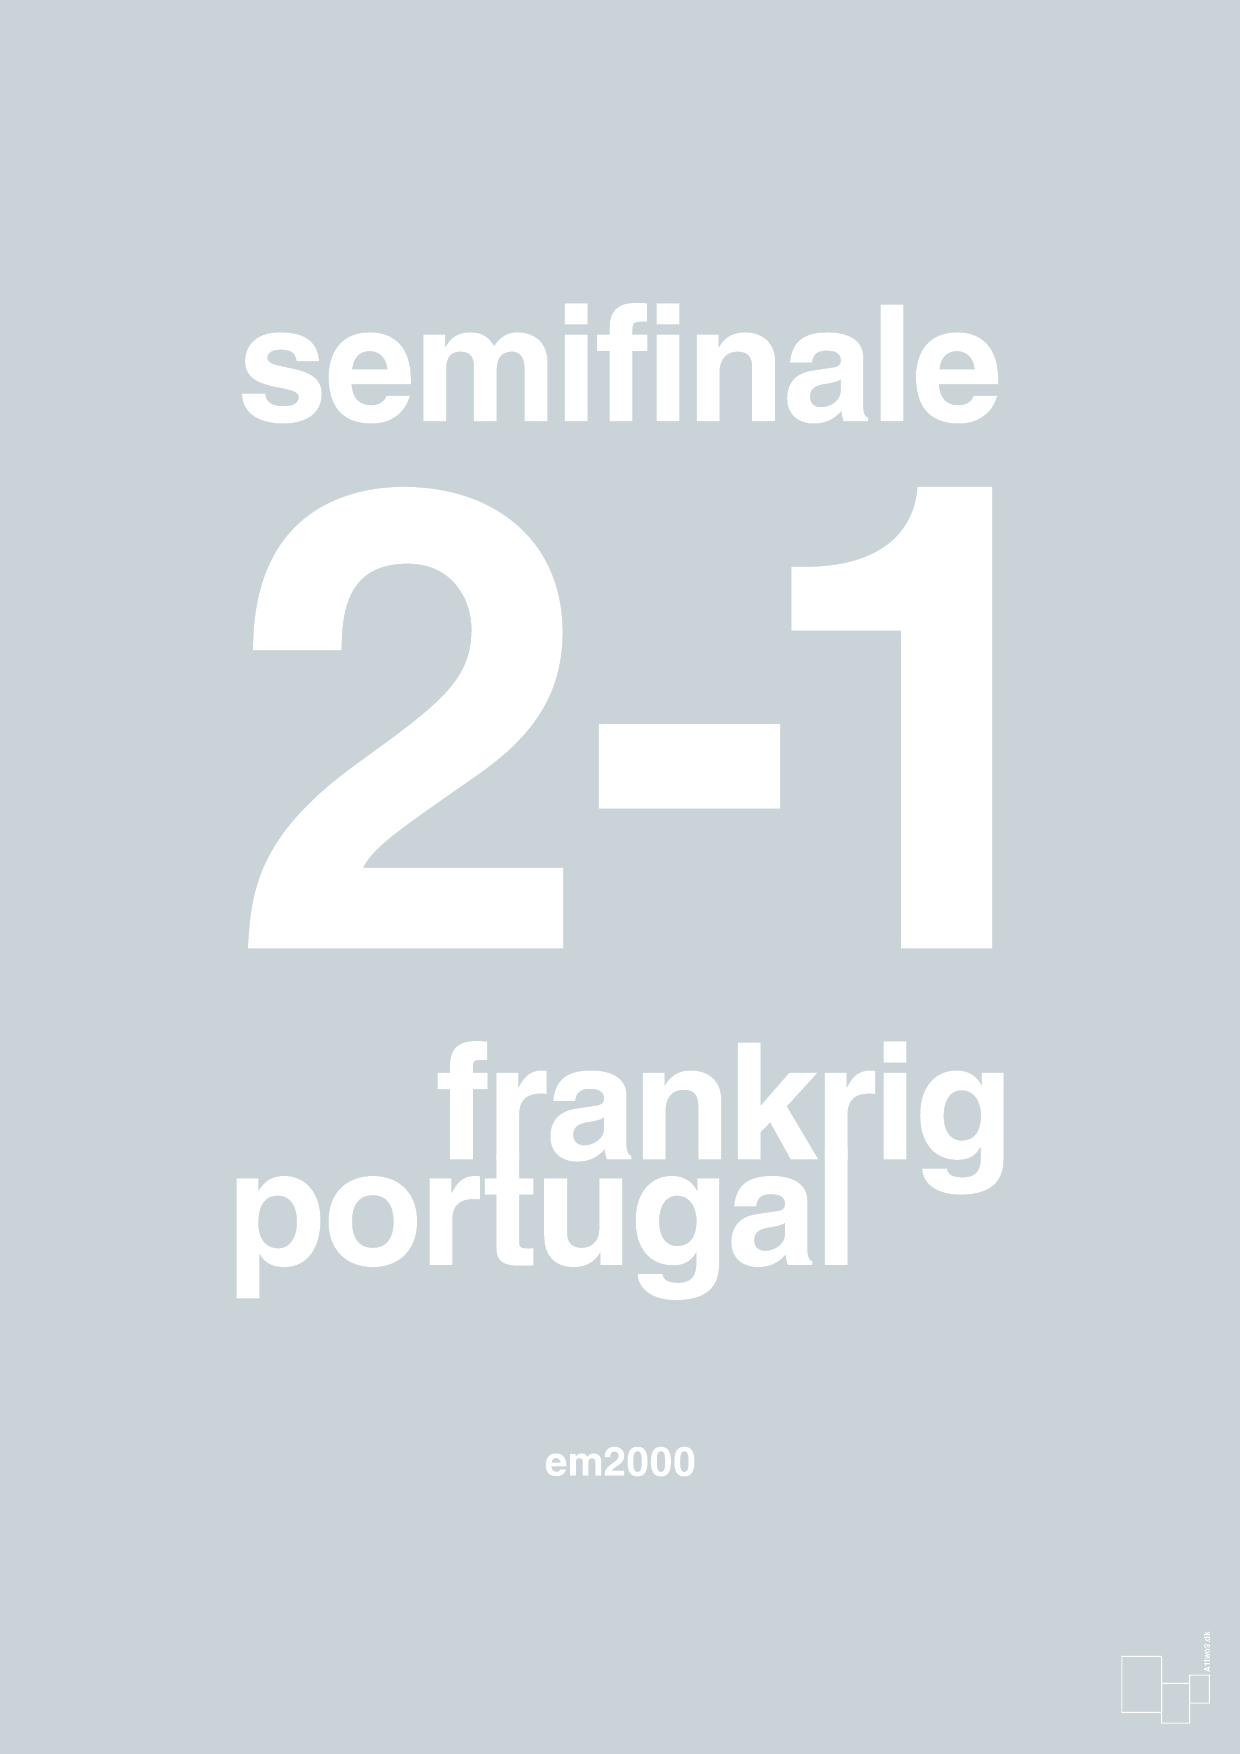 resultat for fodbold em semifinale B i 2000 - Plakat med Sport & Fritid i Light Drizzle